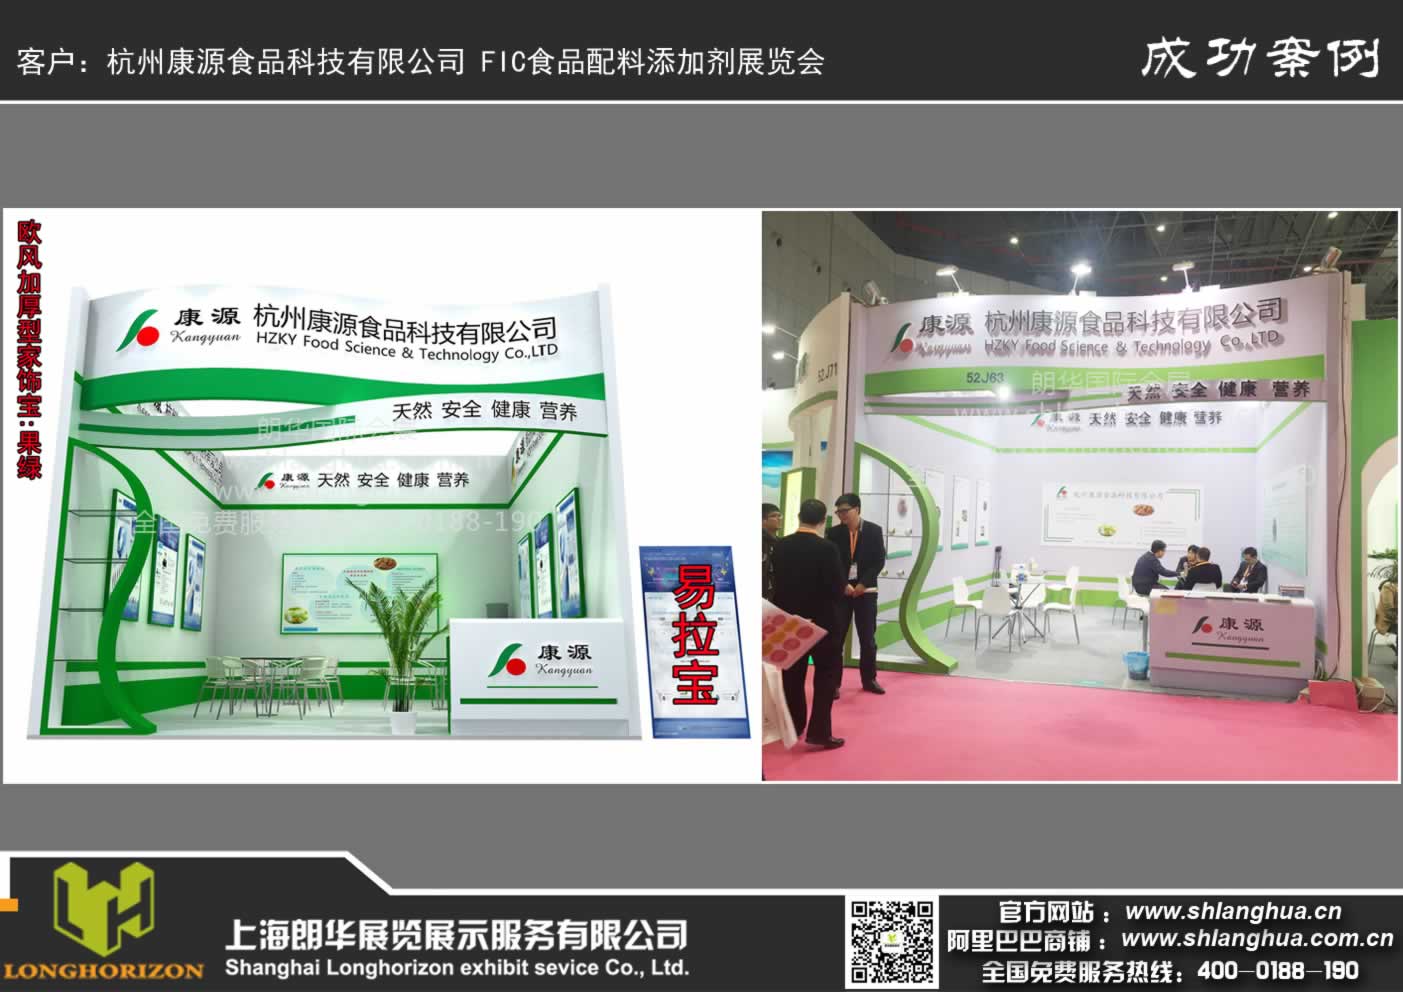 杭州康源食品科技有限公司 FIC食品配料添加剂展览会